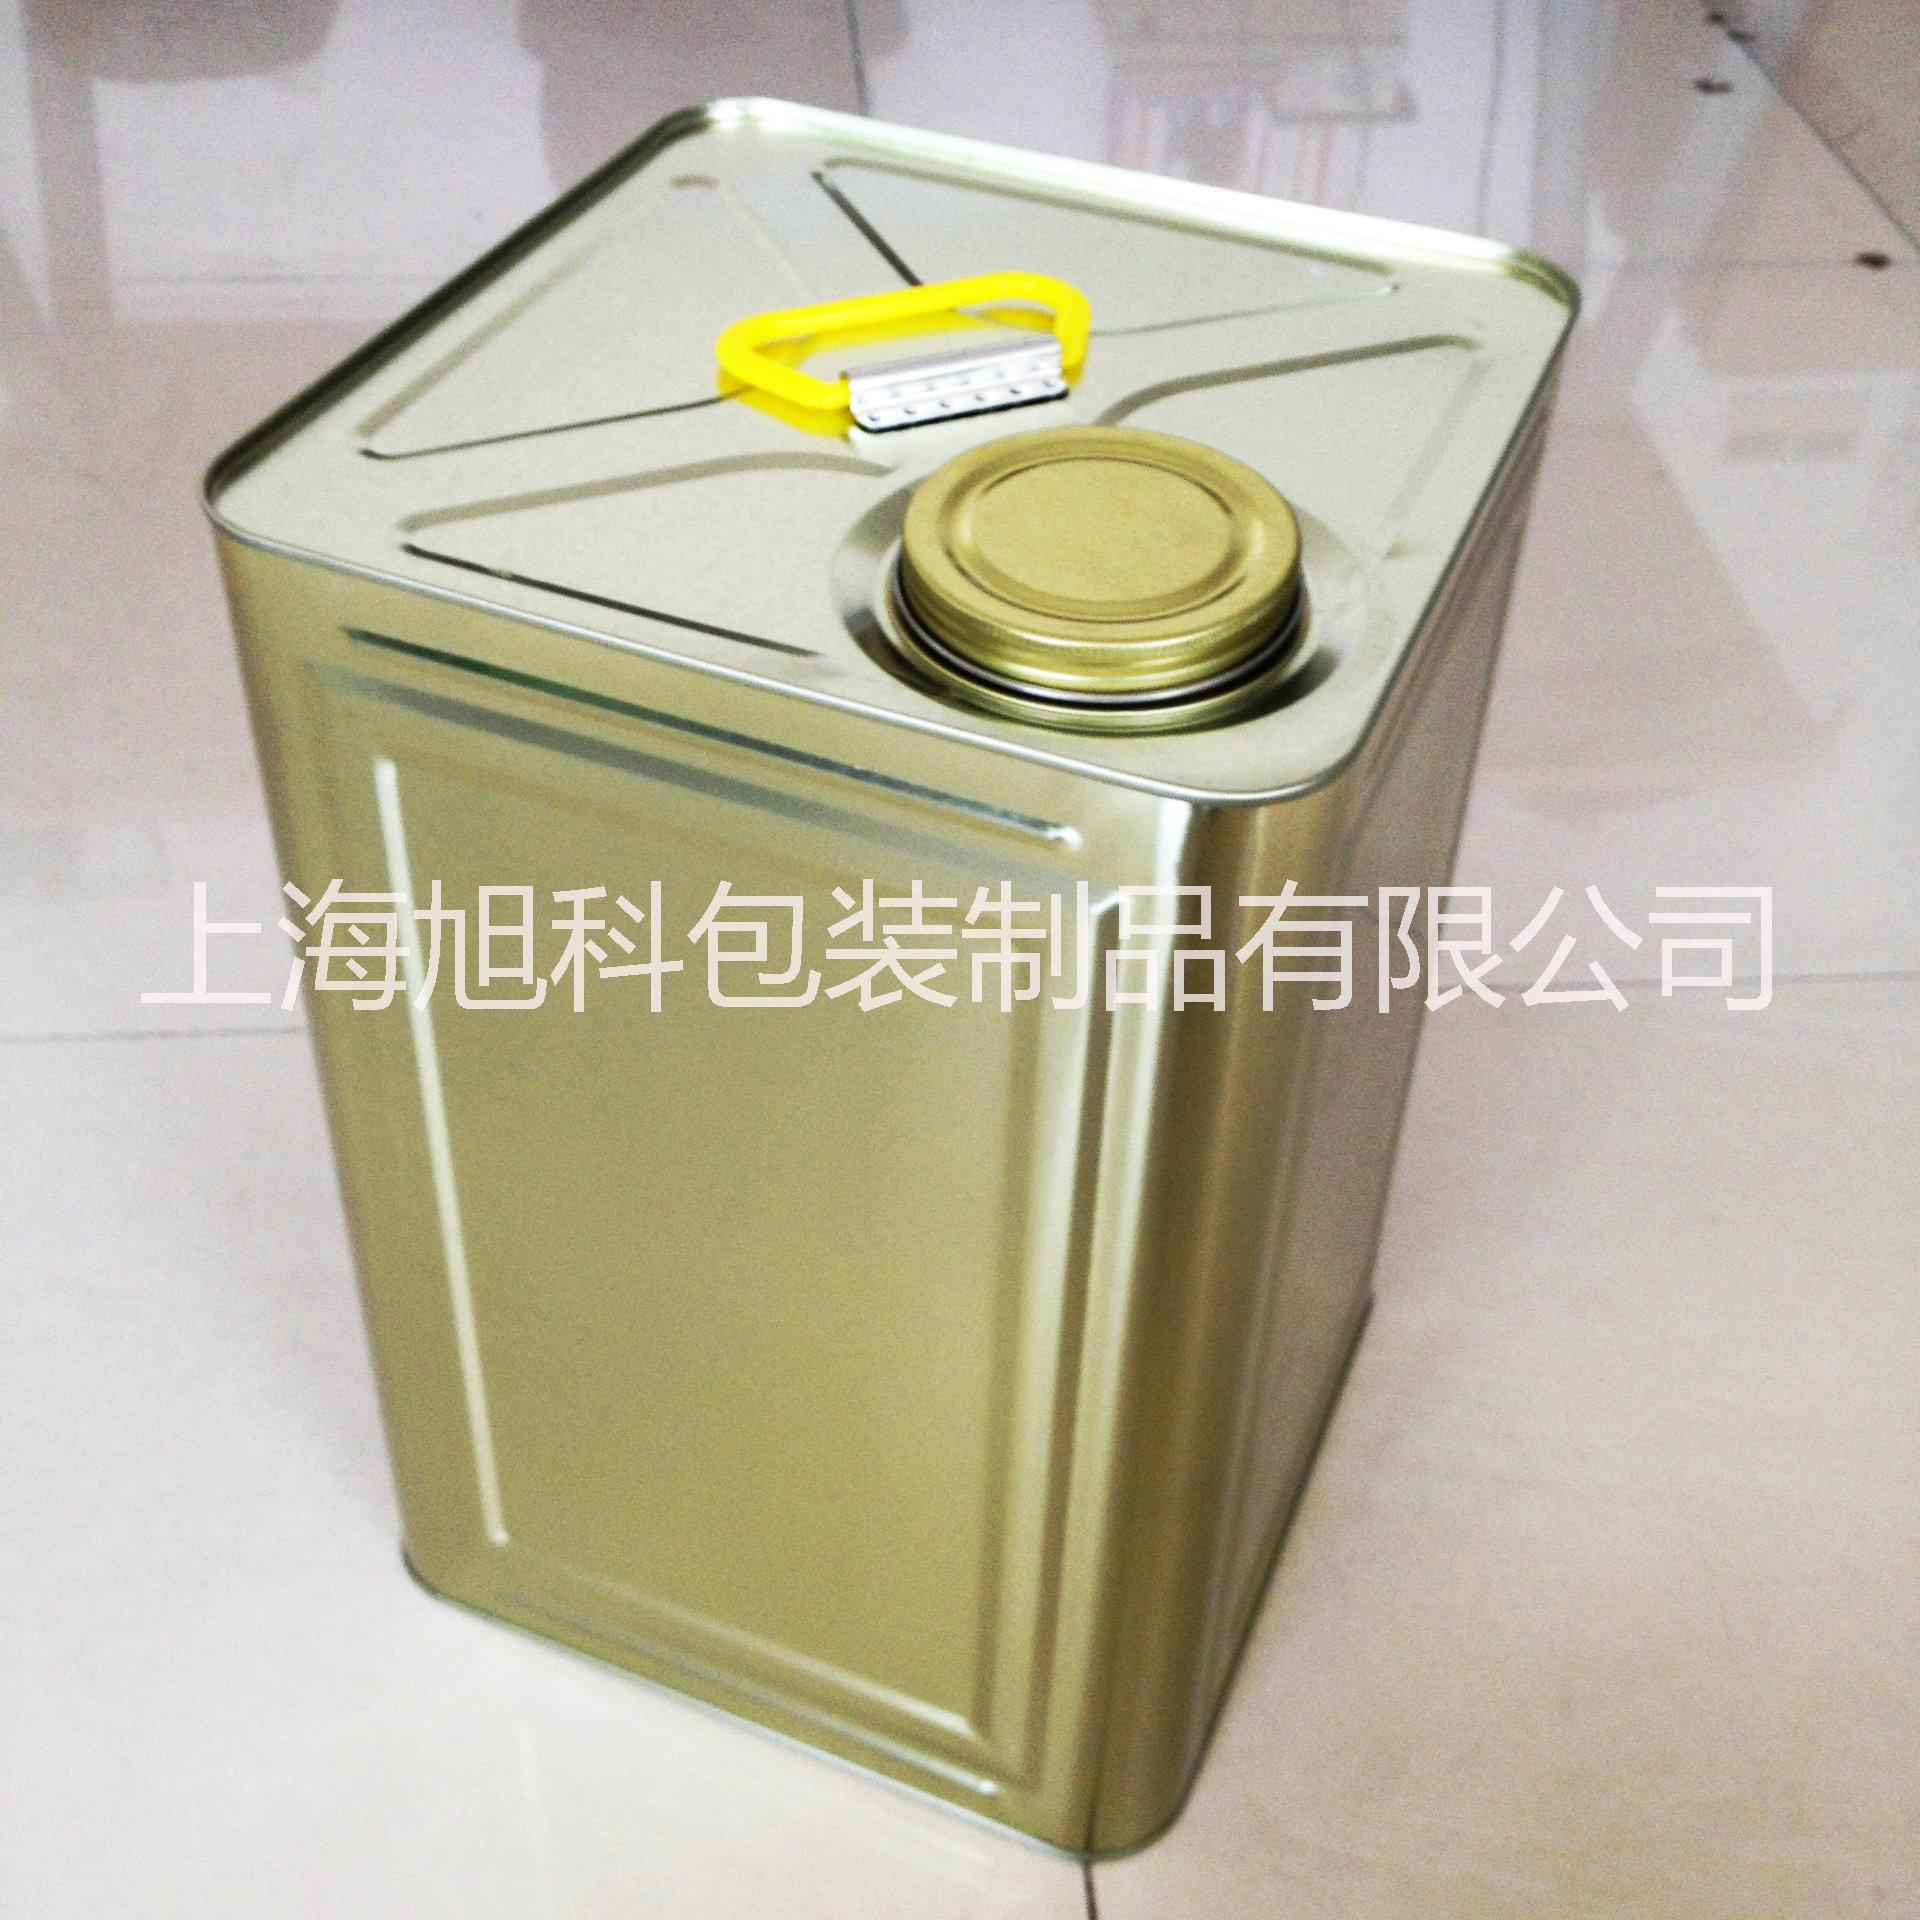 上海旭科供应18L螺旋盖方桶铁桶加工定制油墨桶铁桶厂家供应图片